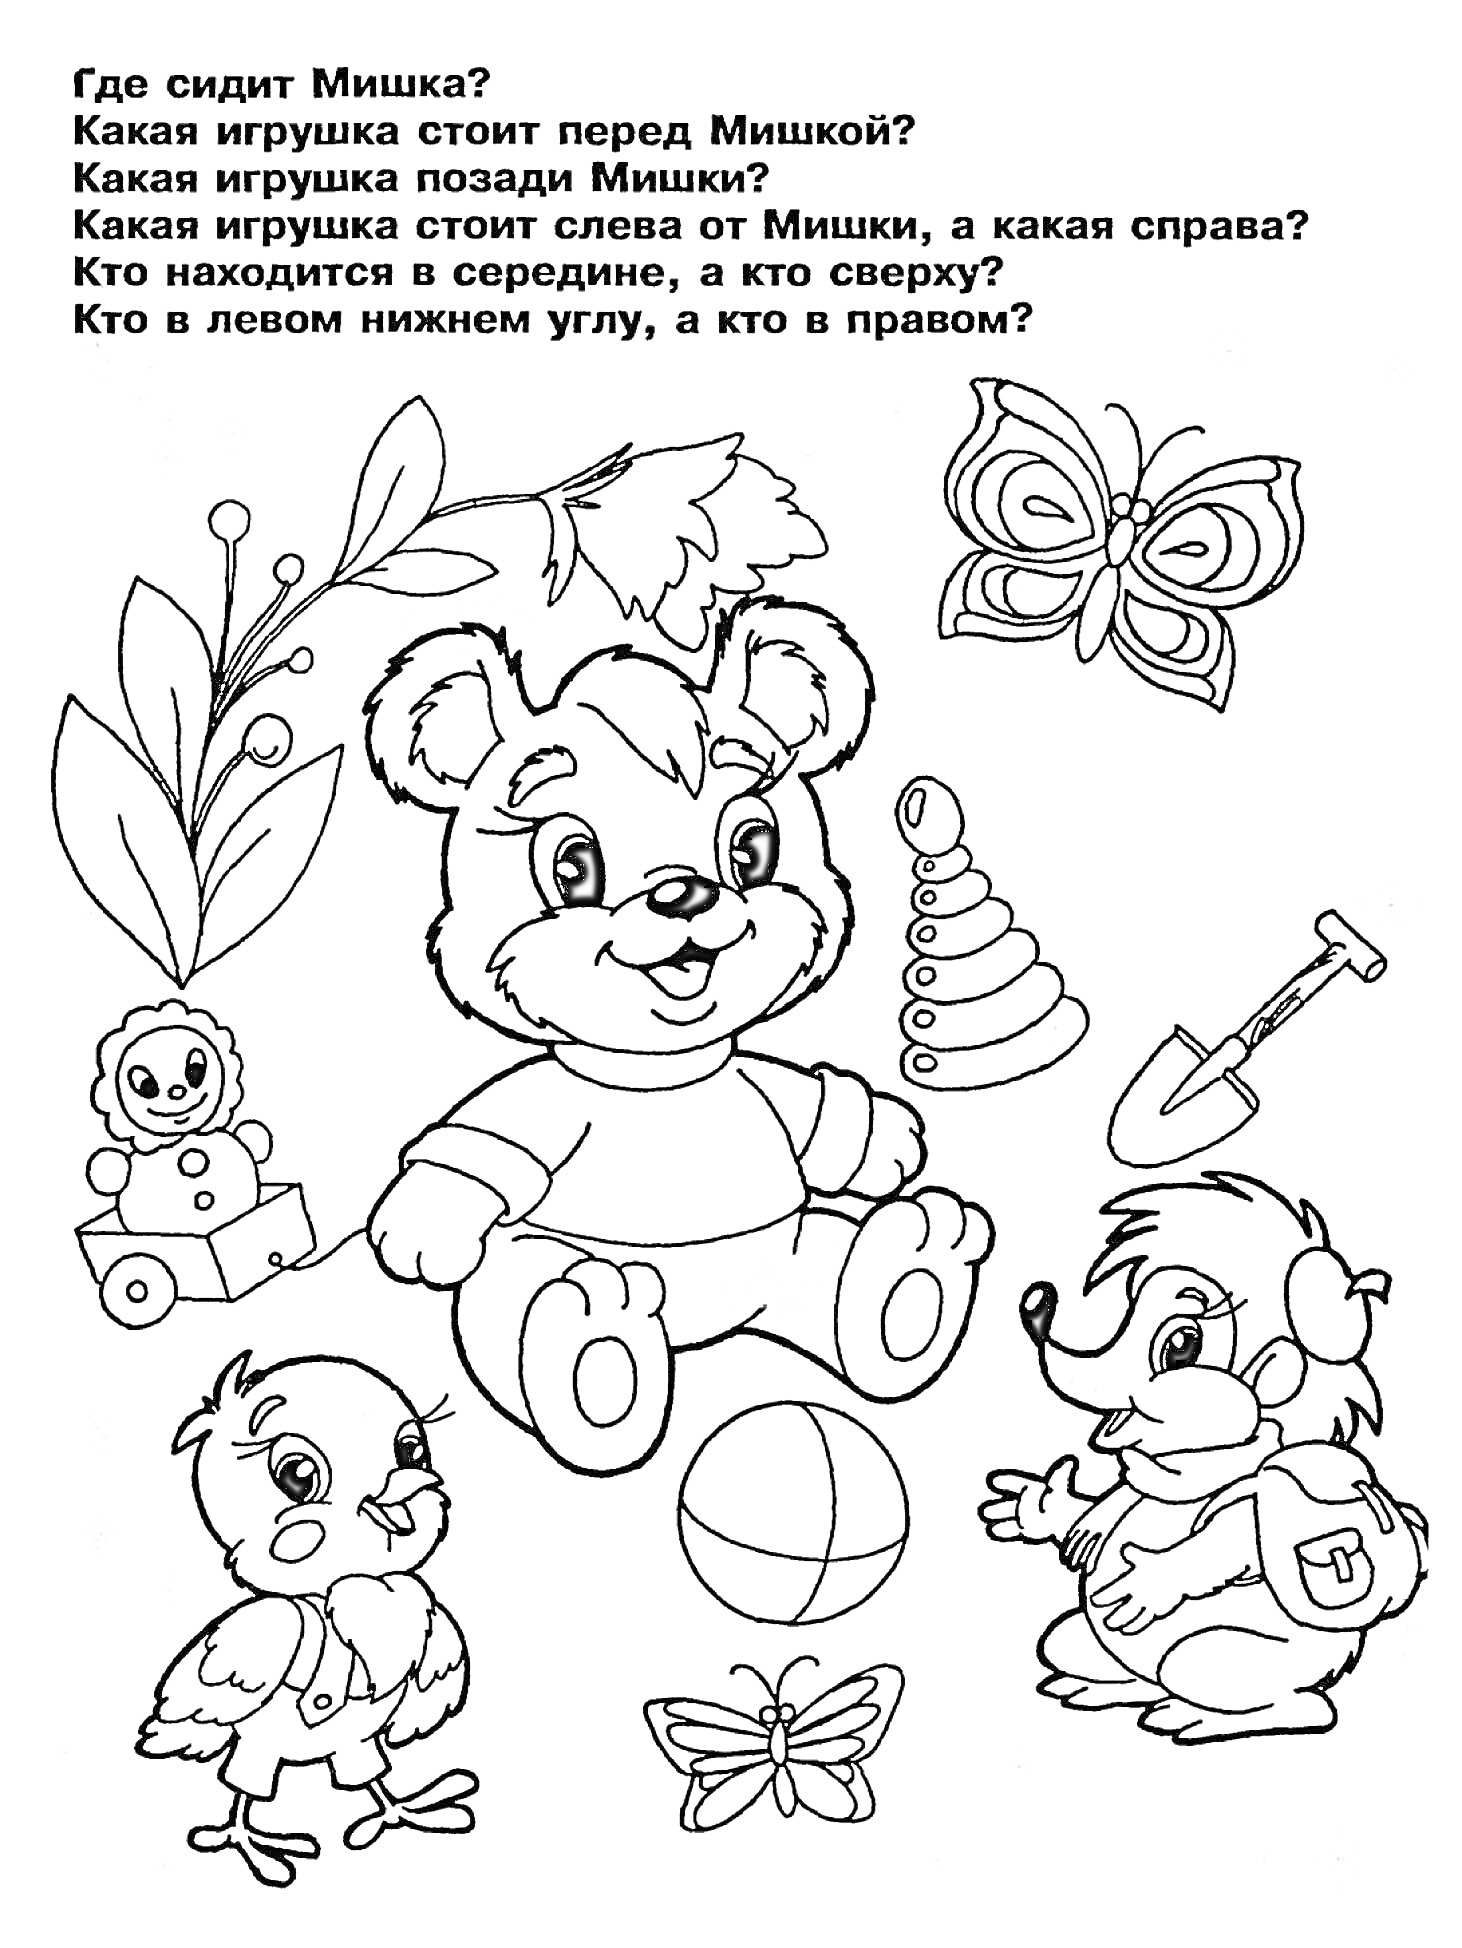 Раскраска Мишка и его друзья: Мишка, пирамидка, цветок, бабочка, лейка, лопата, цыпленок, бабочка с мячом